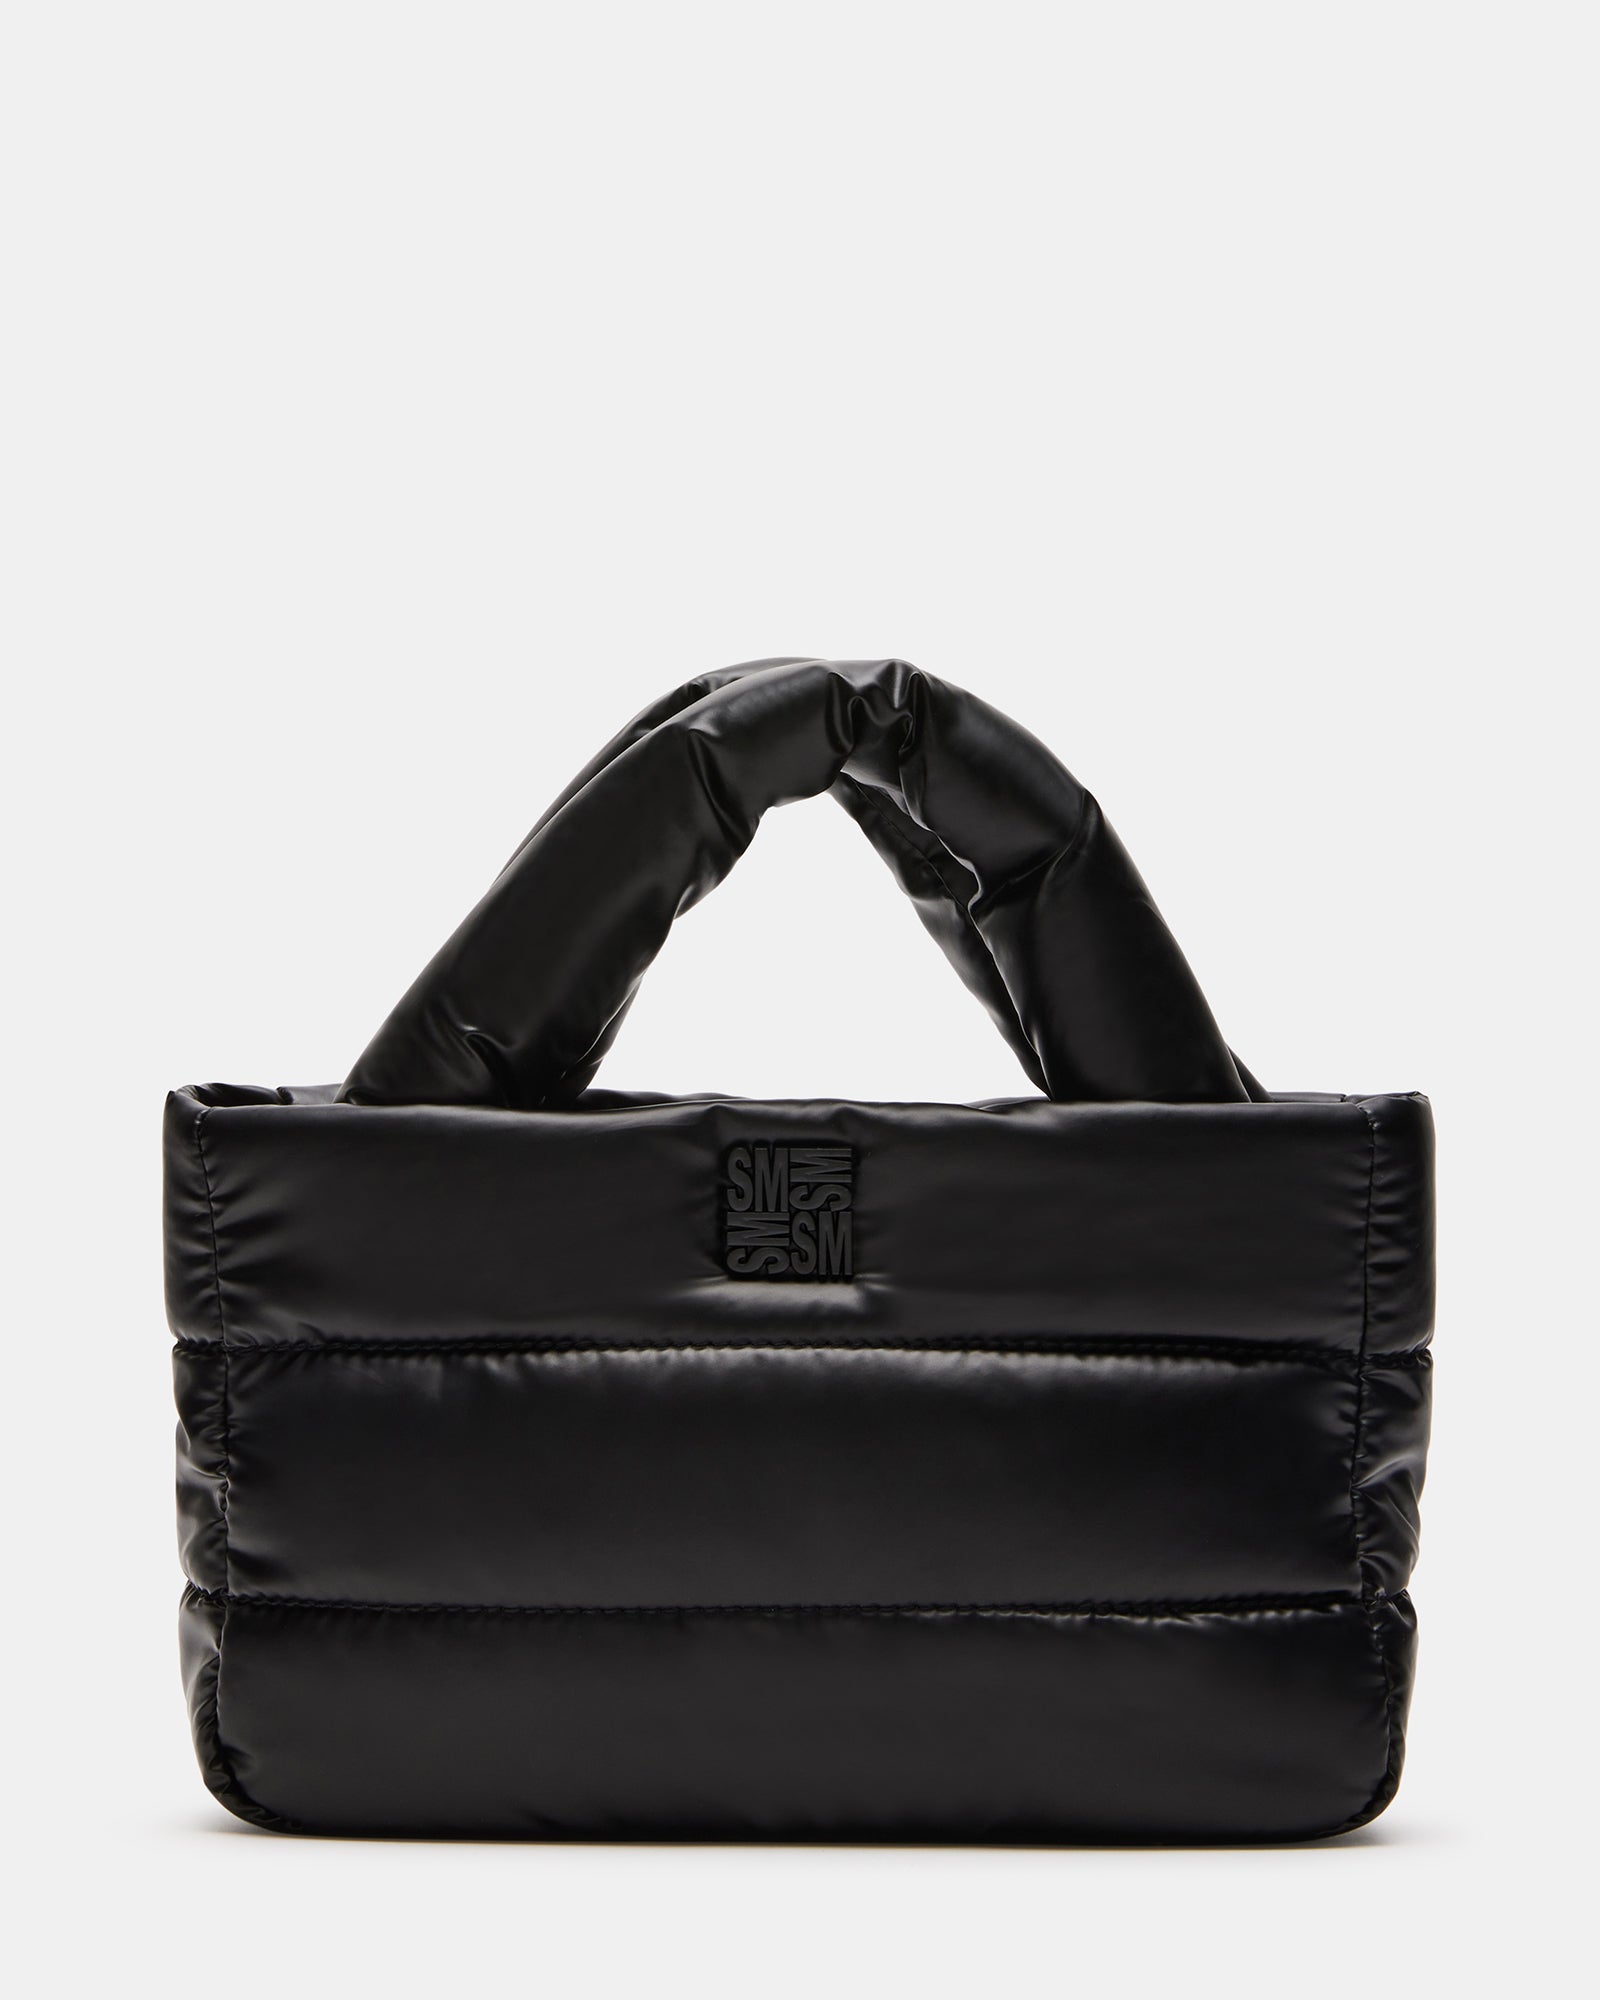 Steve Madden Debbie Nylon Mini Tote Bag - Black